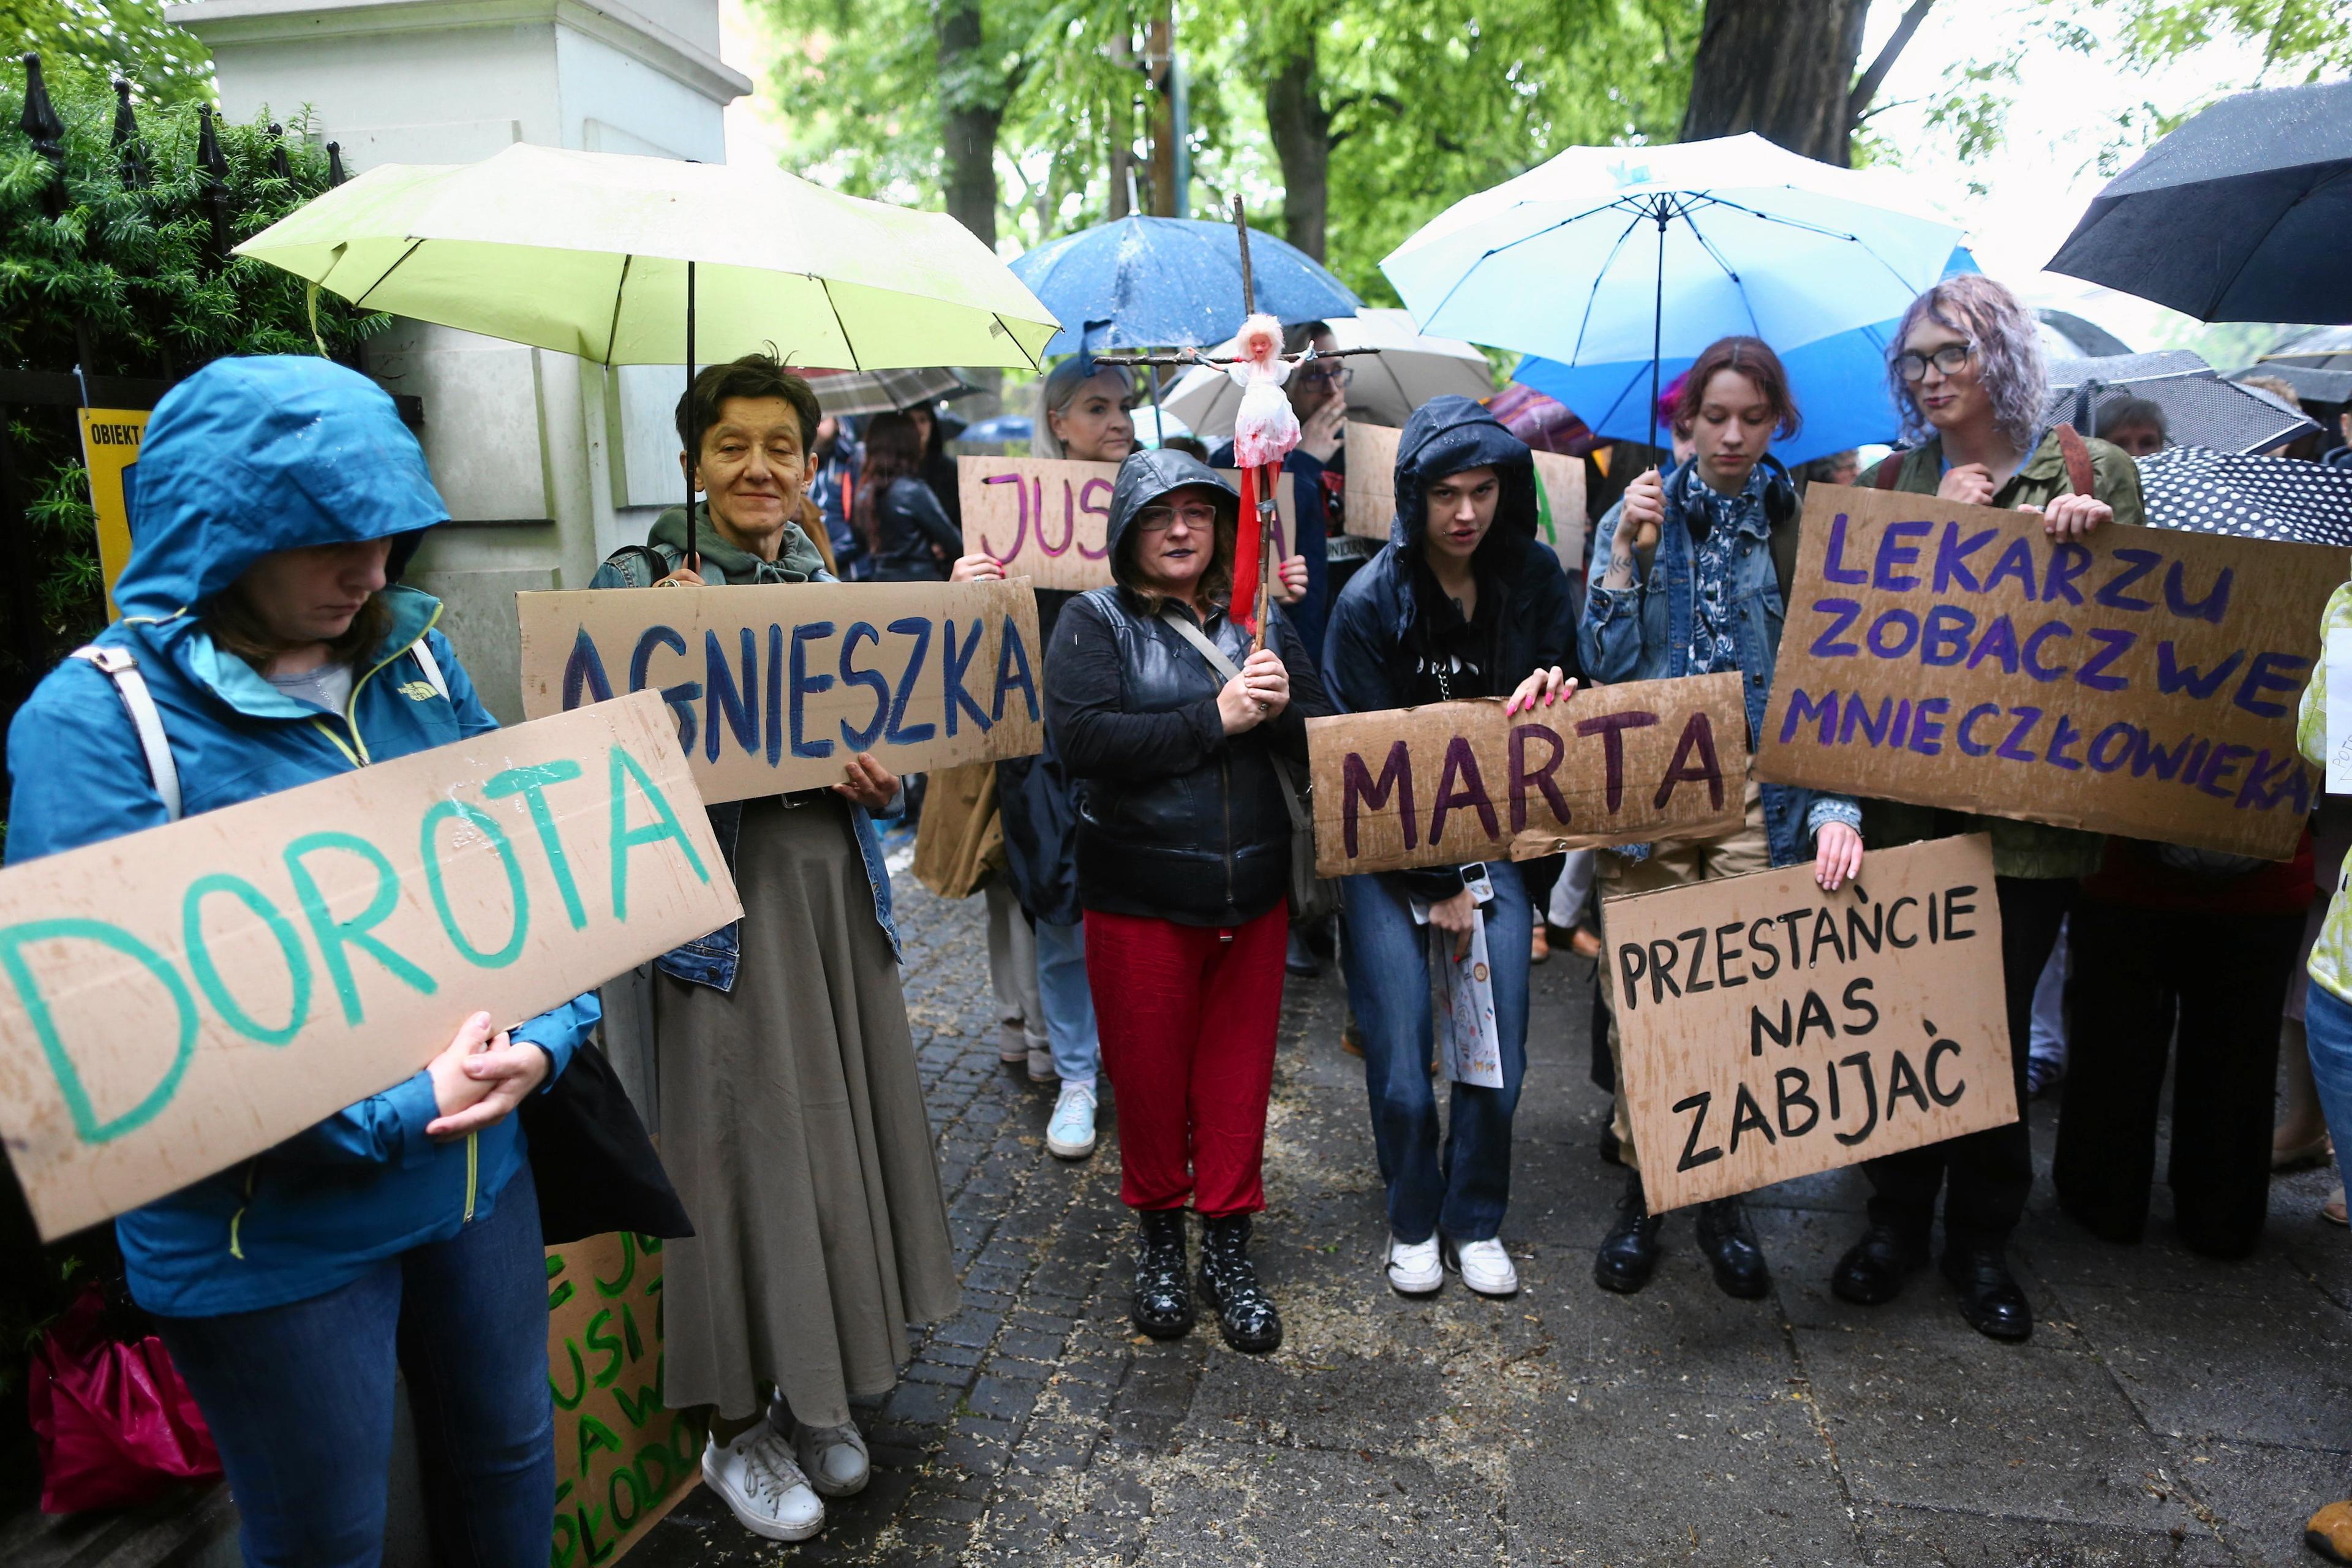 Kilka kobiet protestuje pod parasolkami, na trzymanych transparentach kobiece imiona